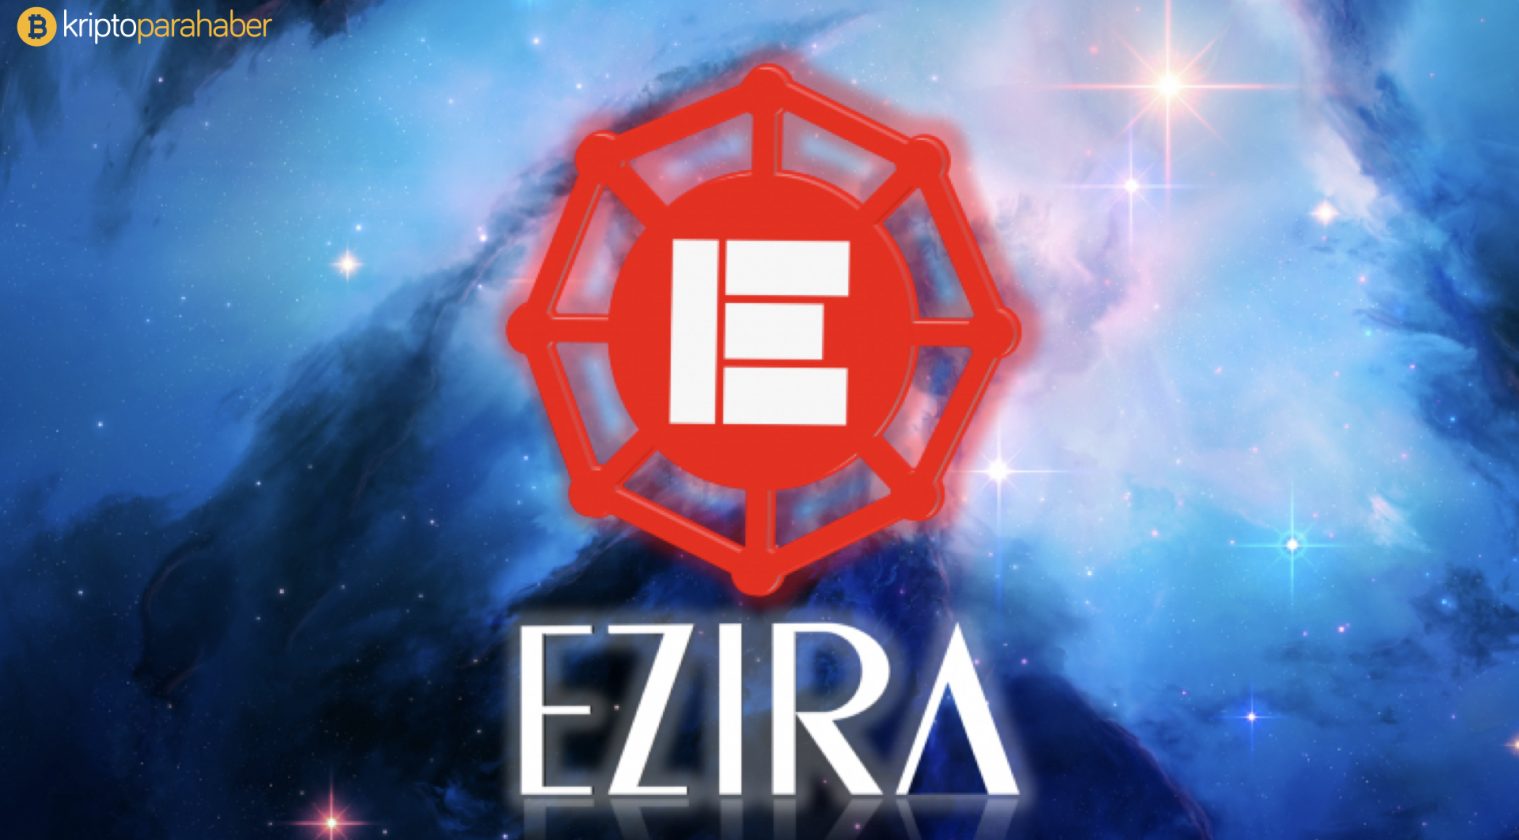 Ezira